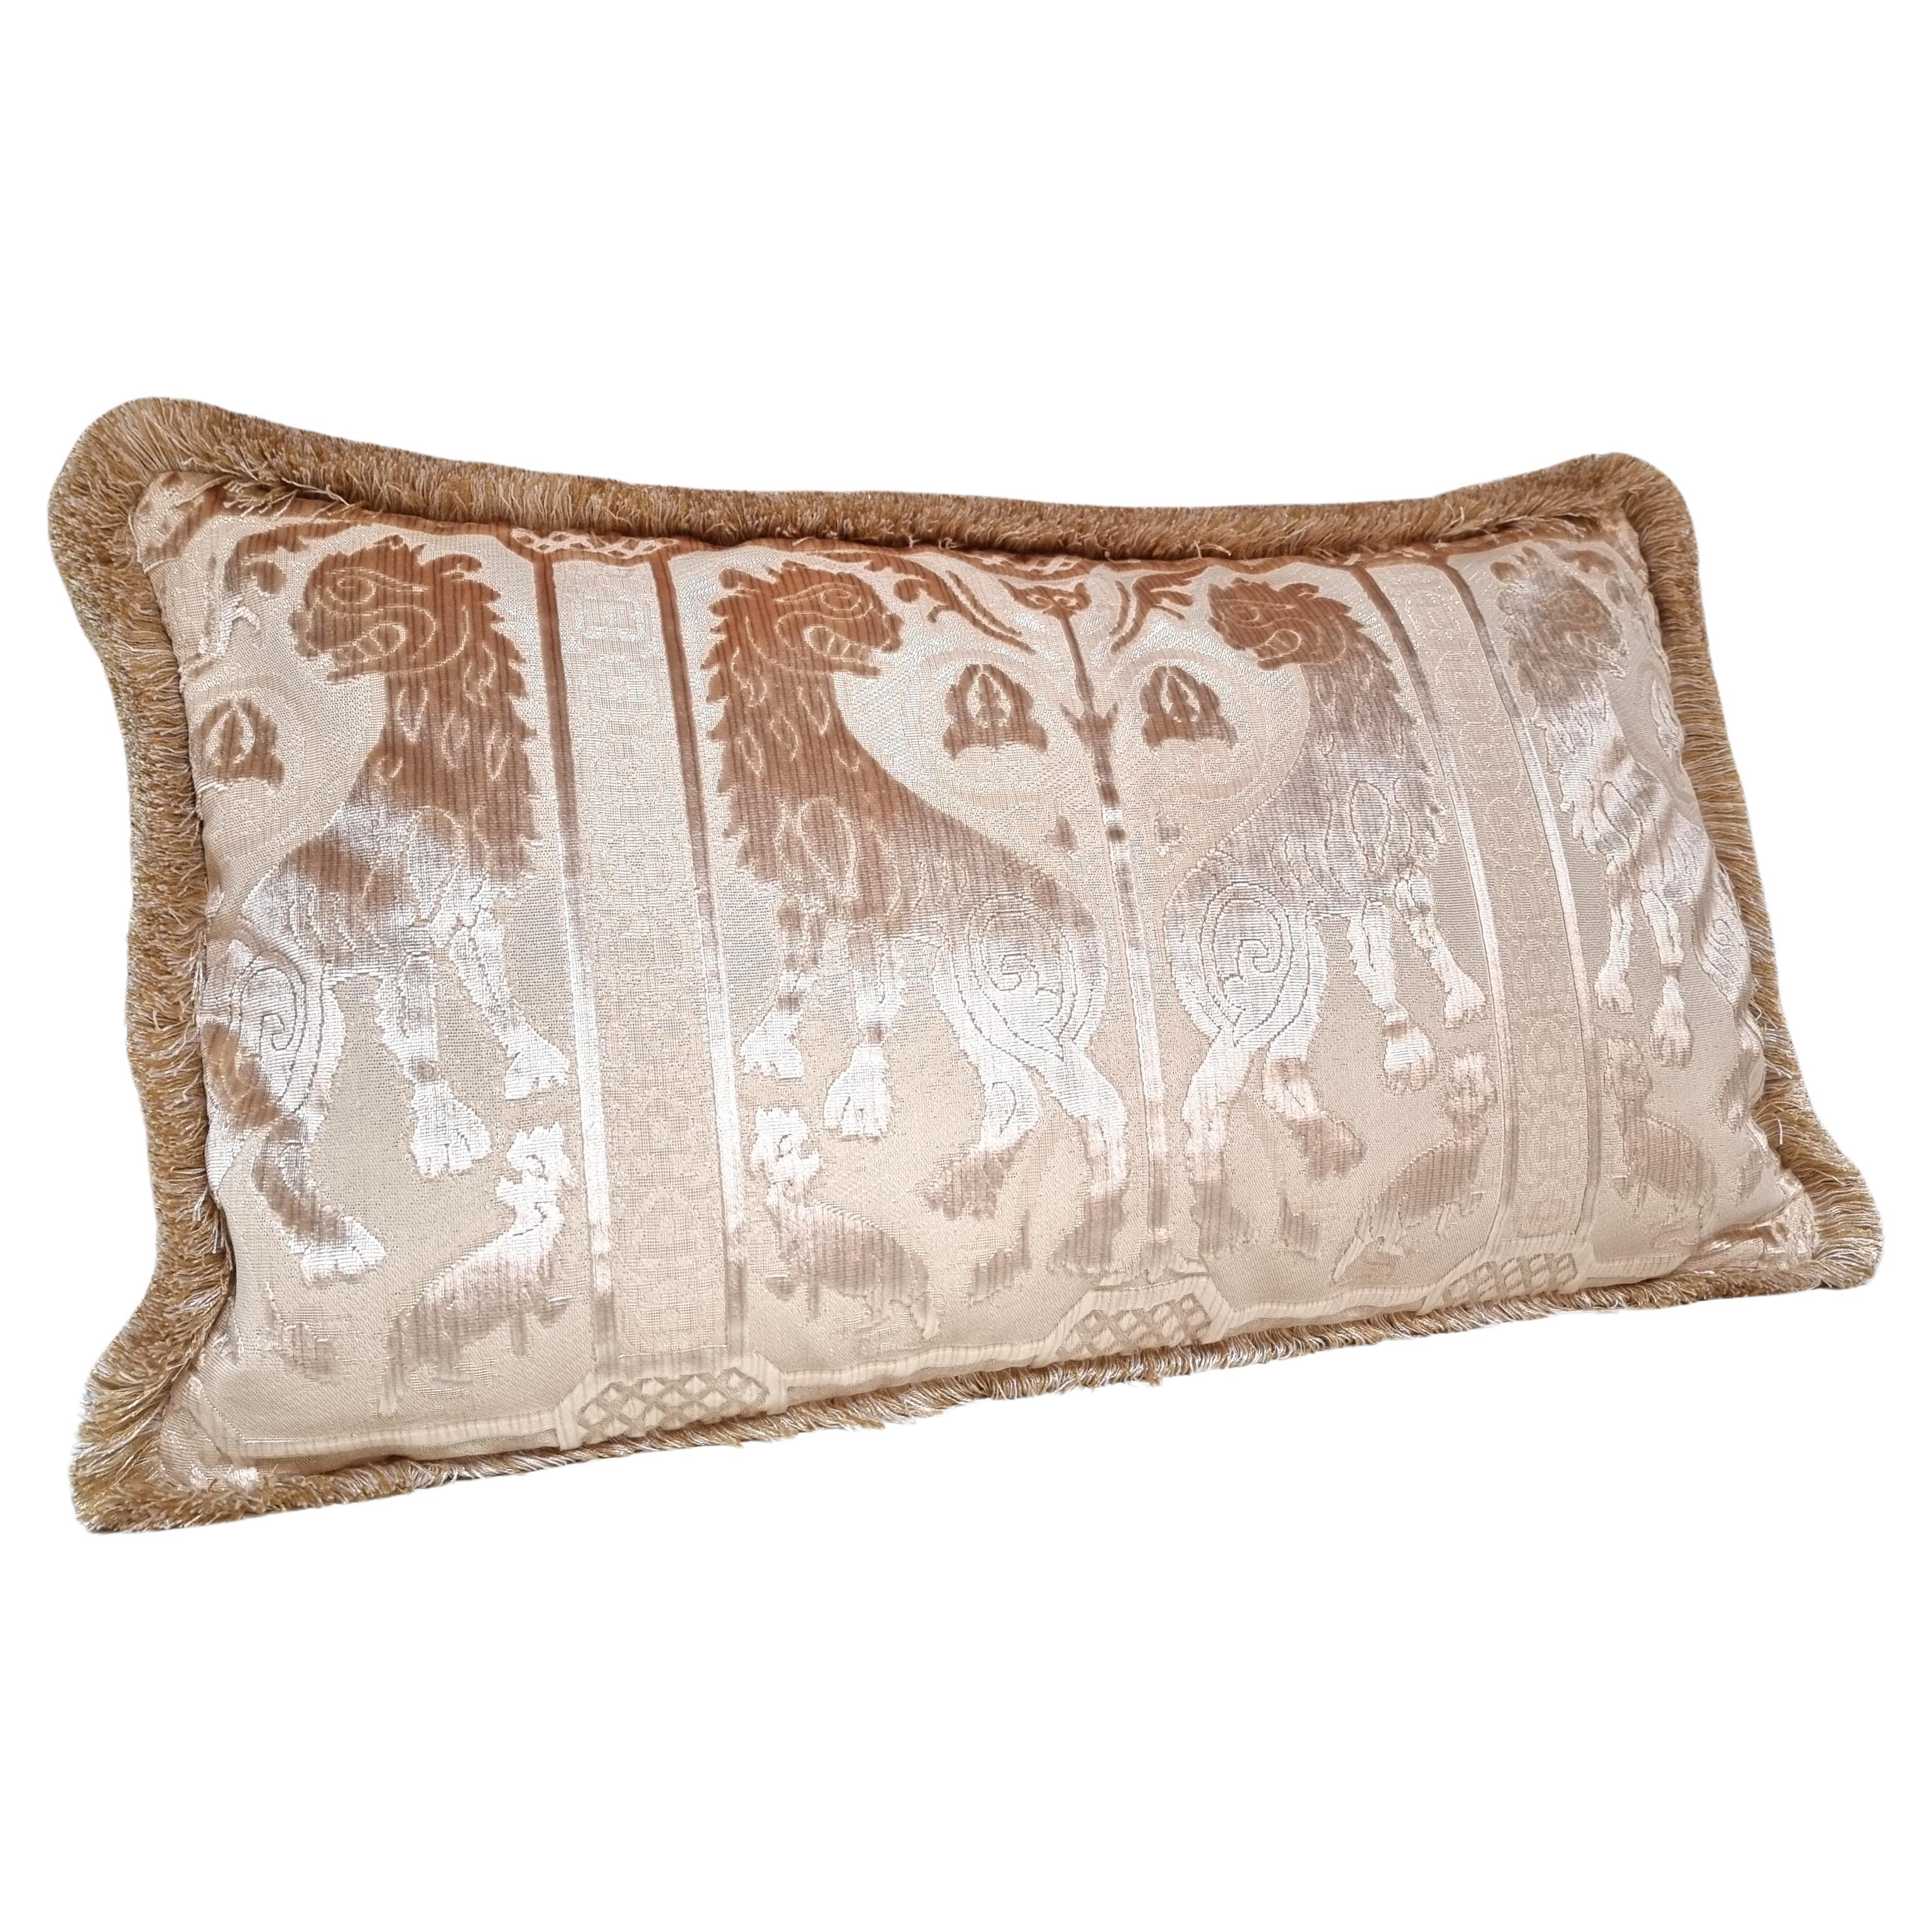 Ce magnifique coussin lombaire est fabriqué à la main à partir de l'emblématique velours de soie Leoni Bizantini - design des XIIe et XIVe siècles - de couleur ivoire provenant de la 